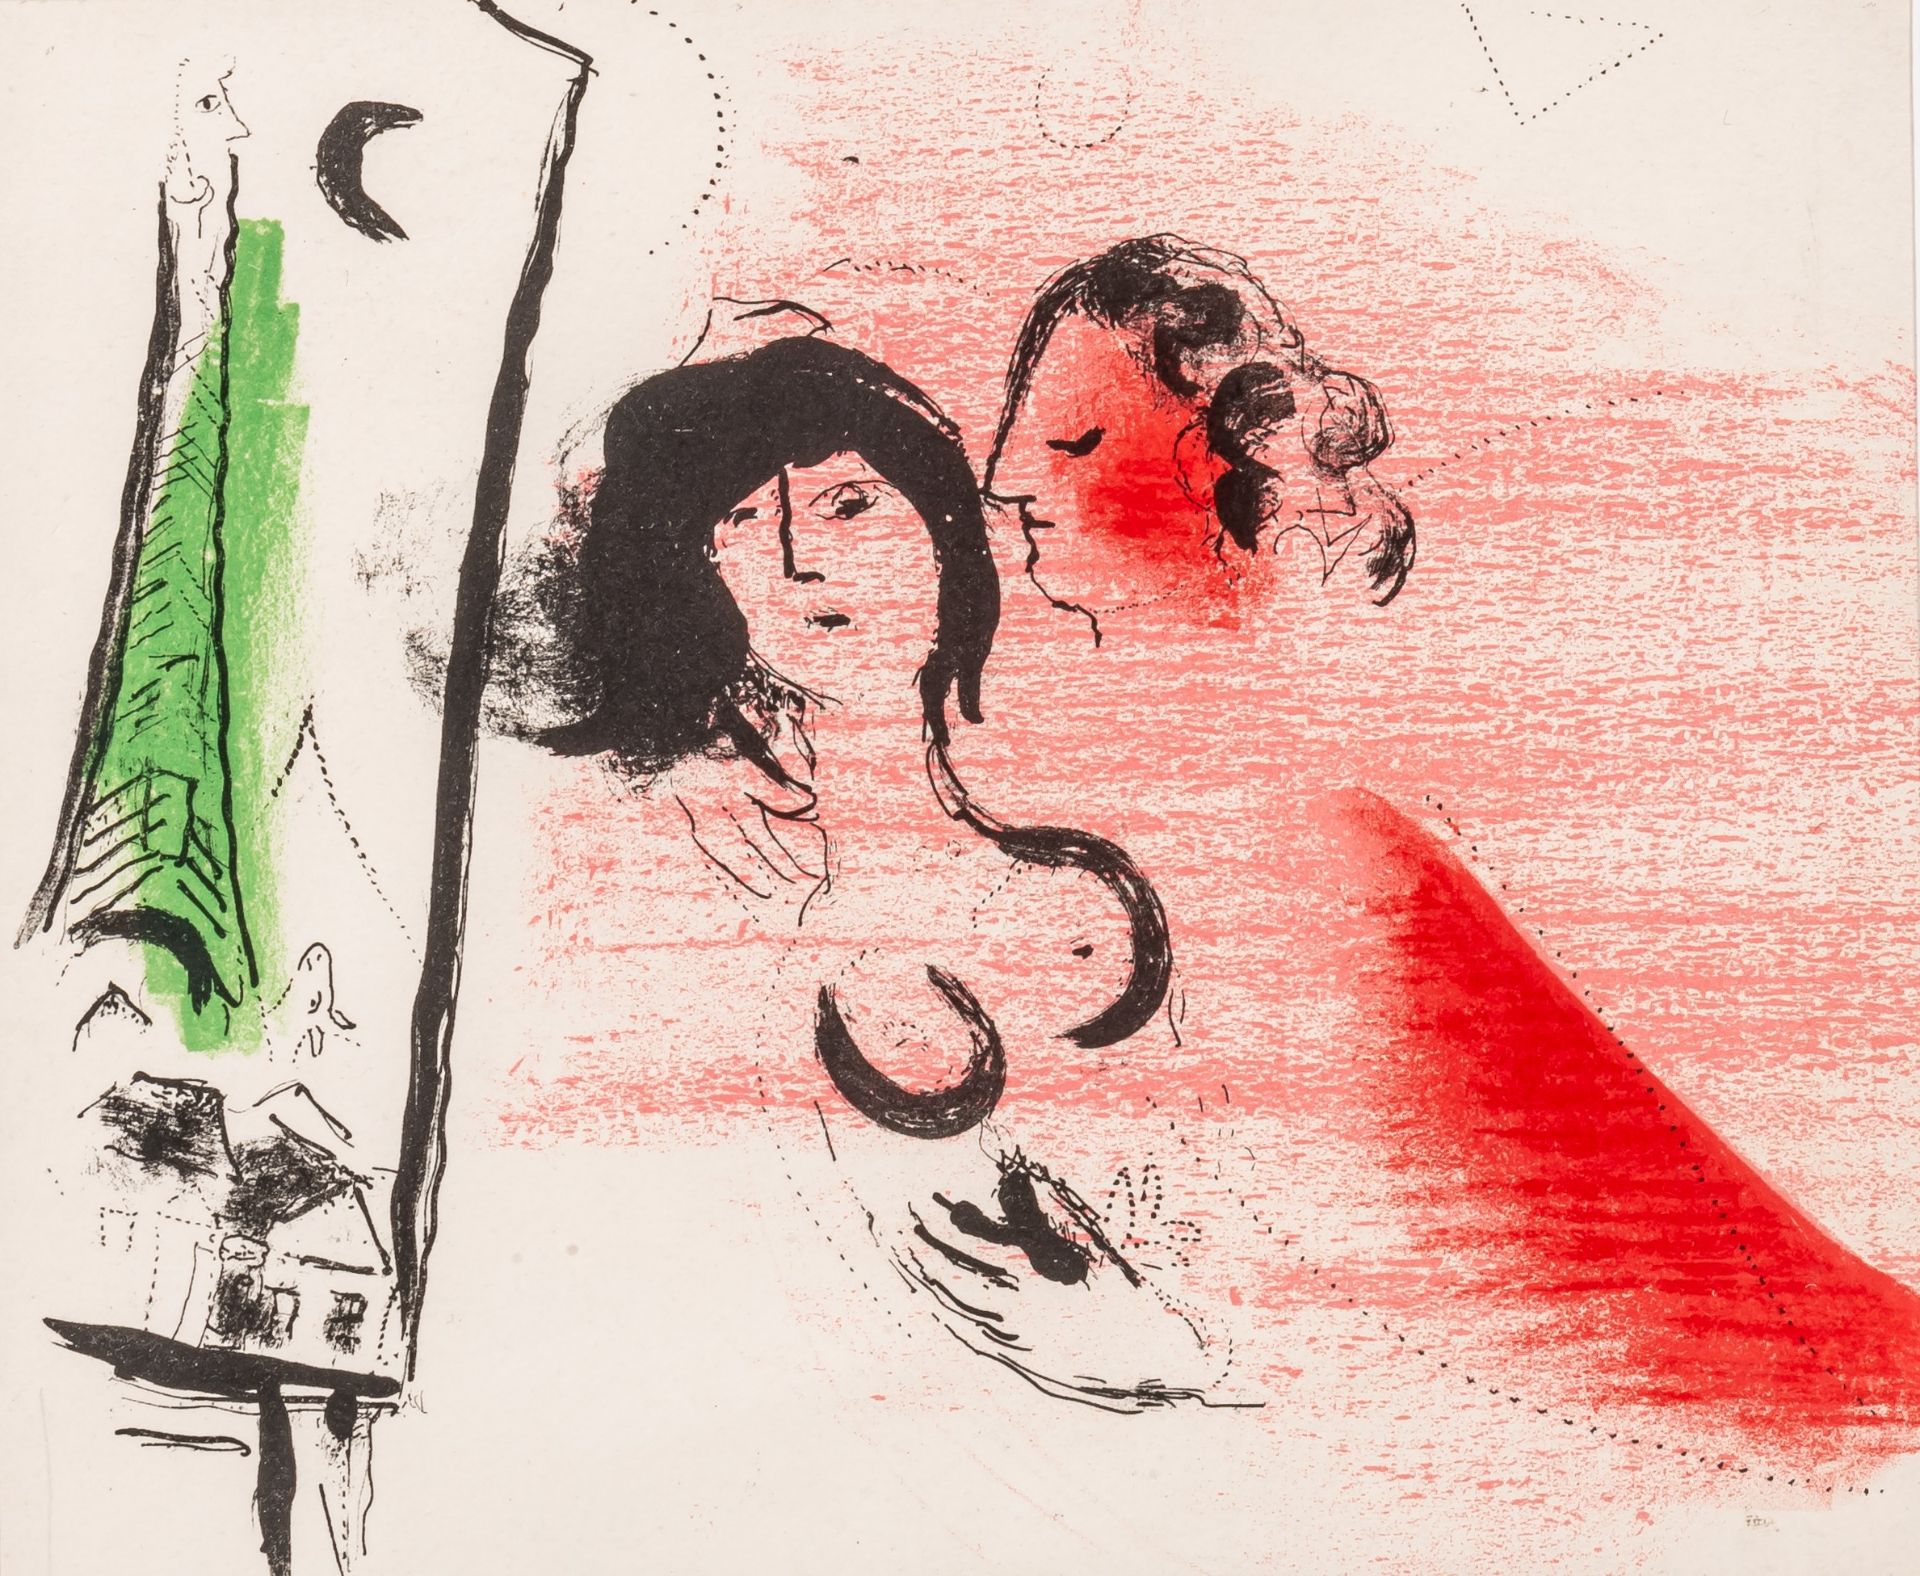 Marc Chagall (1887-1985), 'La Tour Eiffel verte', Mourlot edition, lithograph on Arches paper 20 x 2